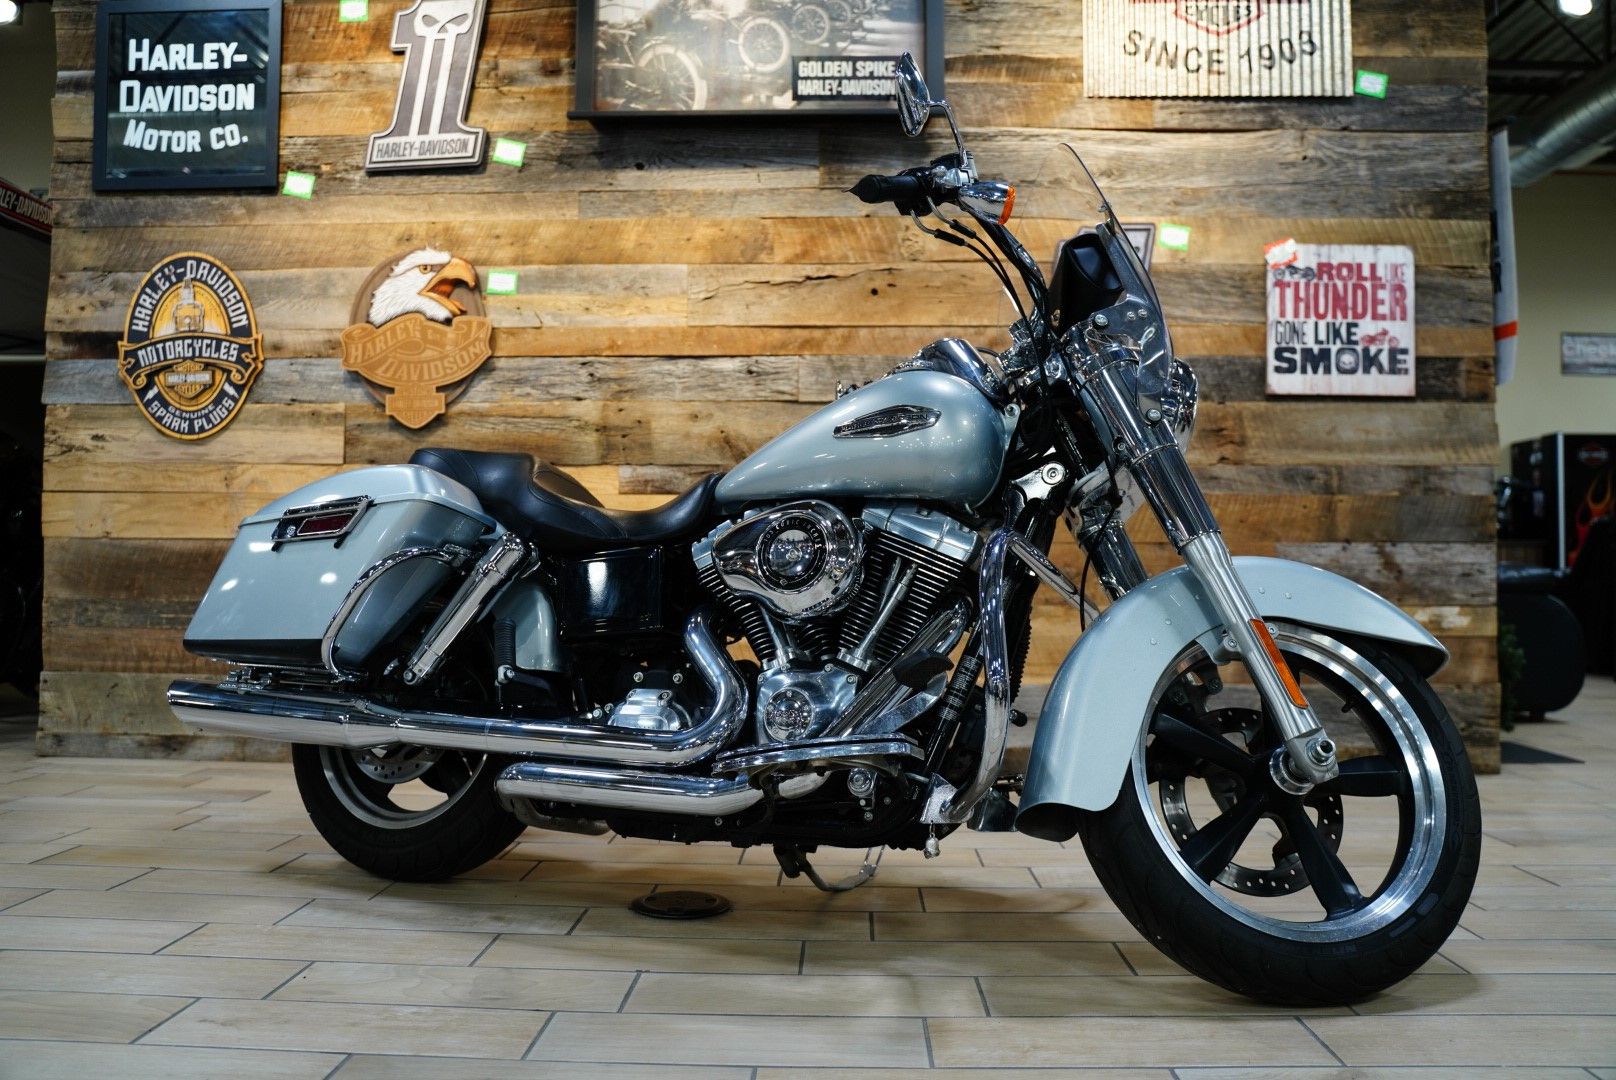 2012 Harley-Davidson Dyna® Switchback in Riverdale, Utah - Photo 1